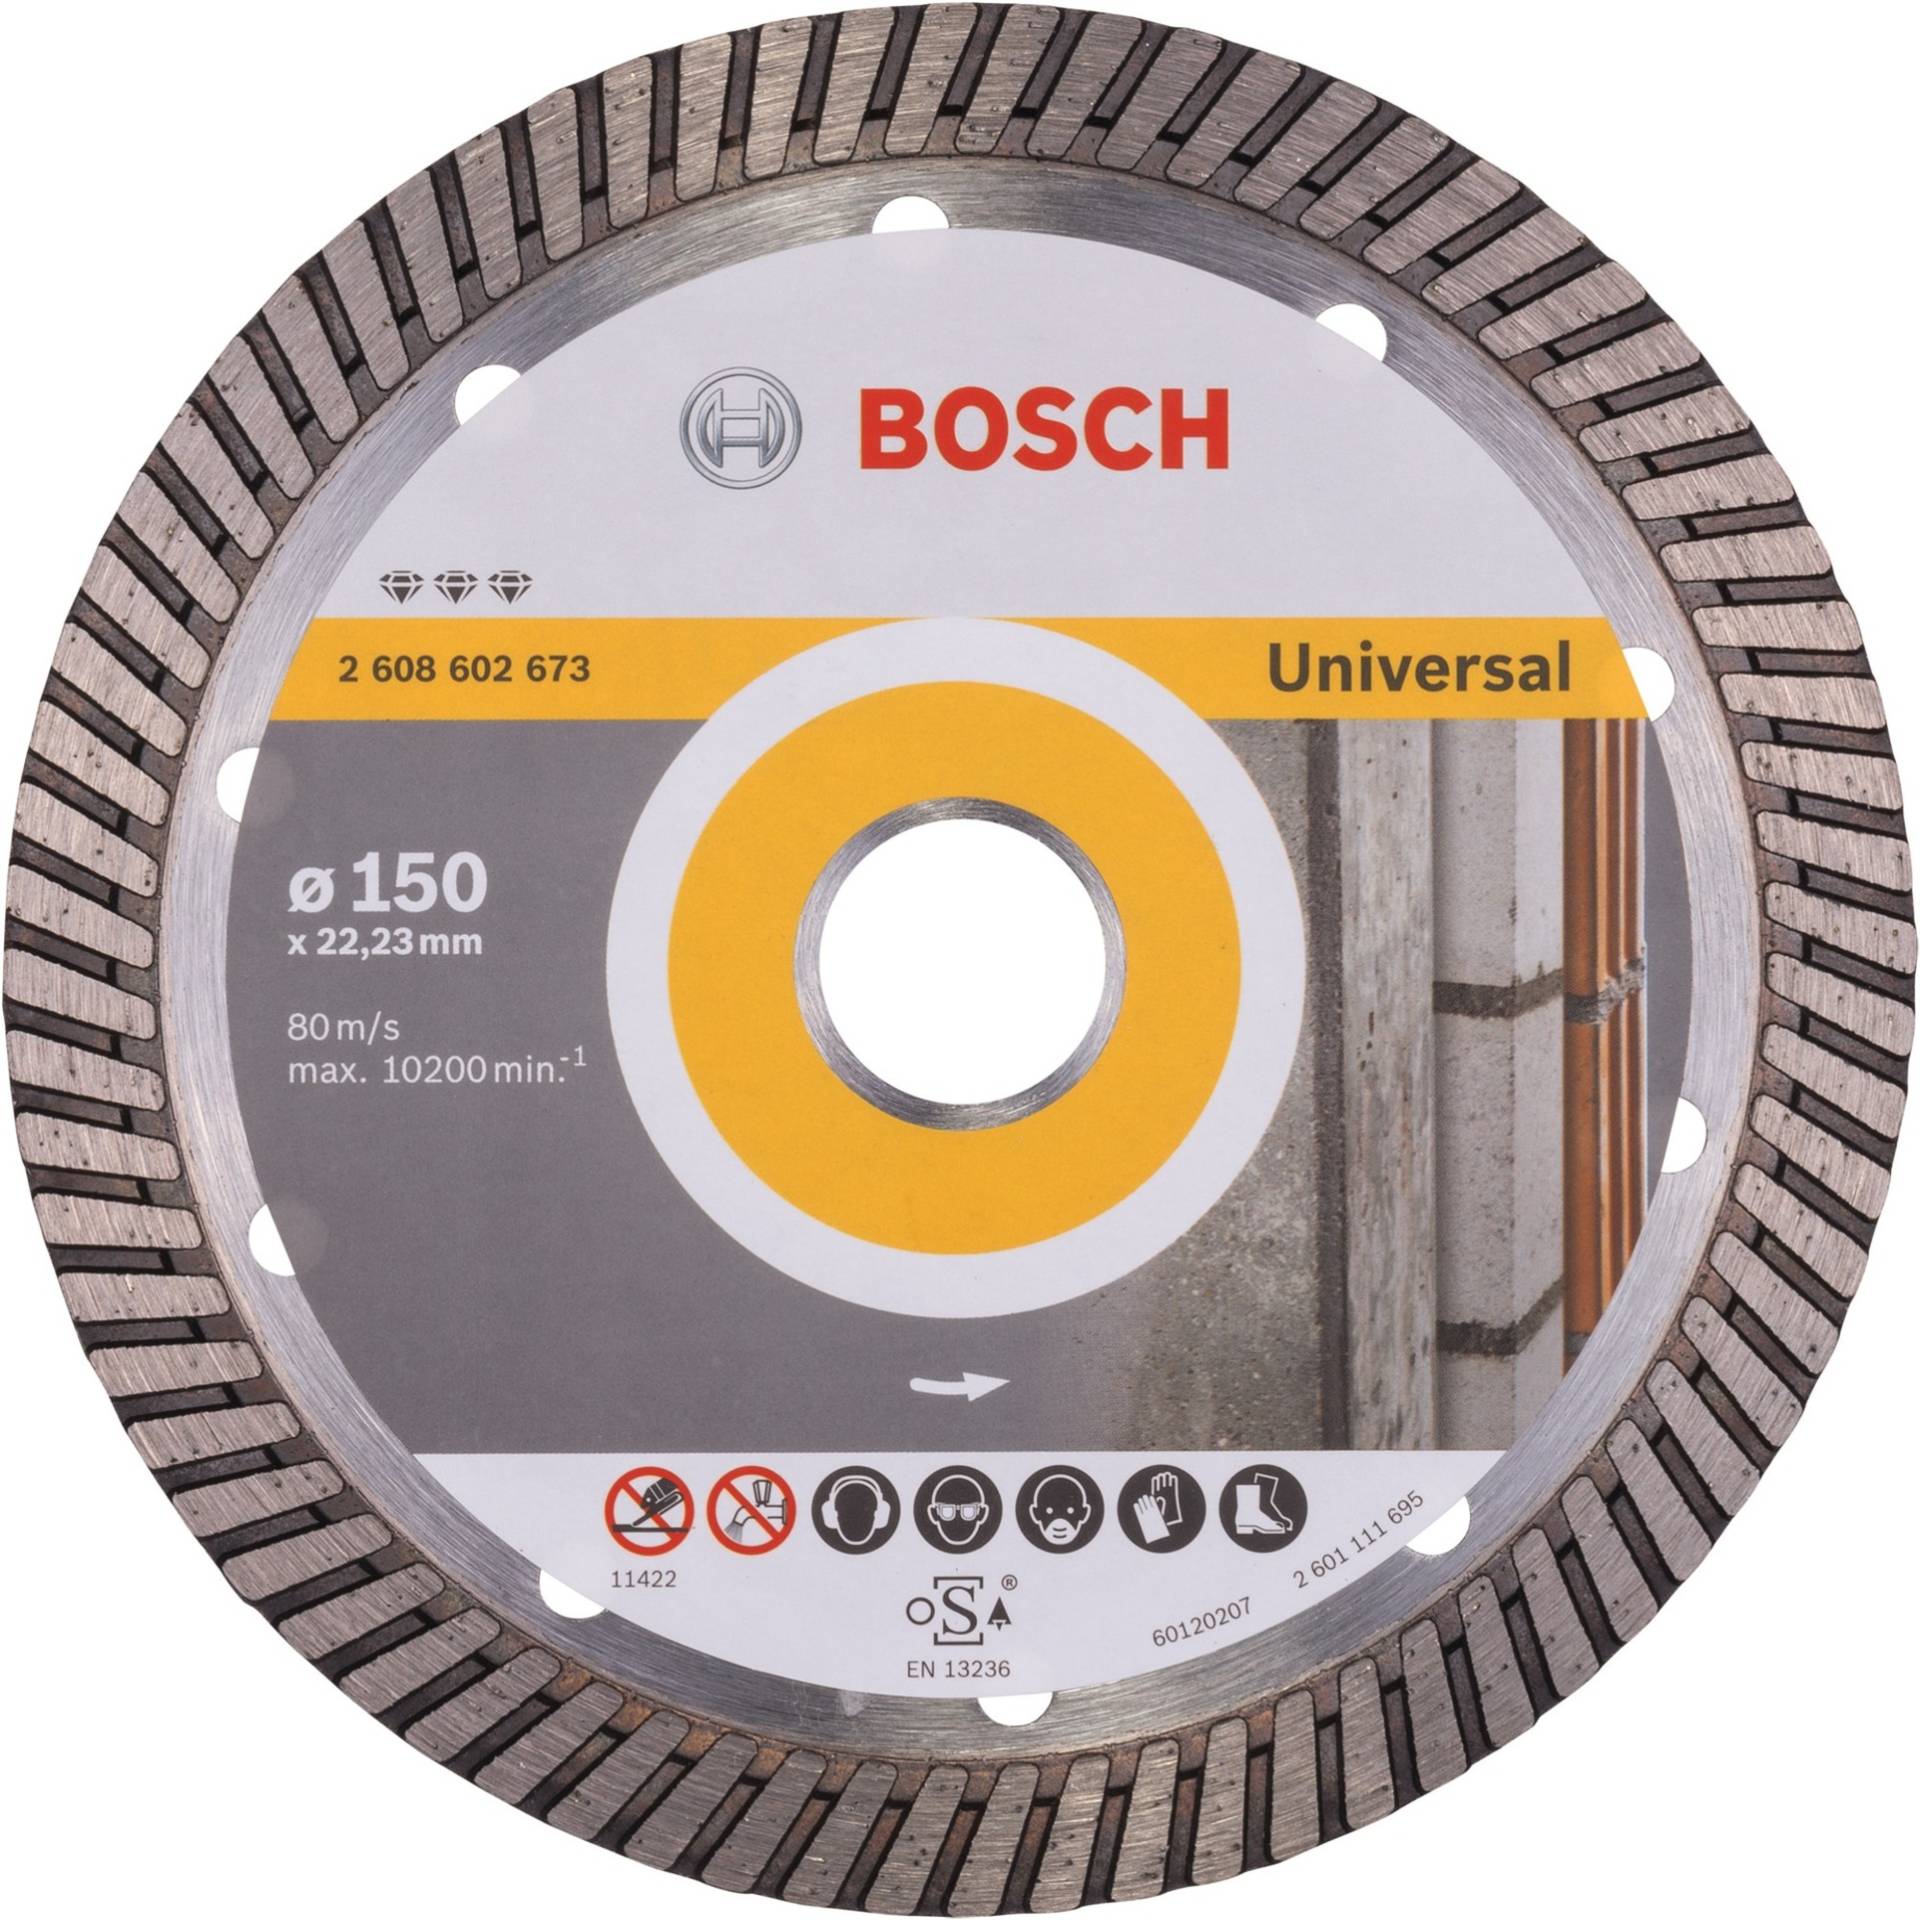 Diamanttrennscheibe Best for Universal Turbo, Ø 150mm von Bosch